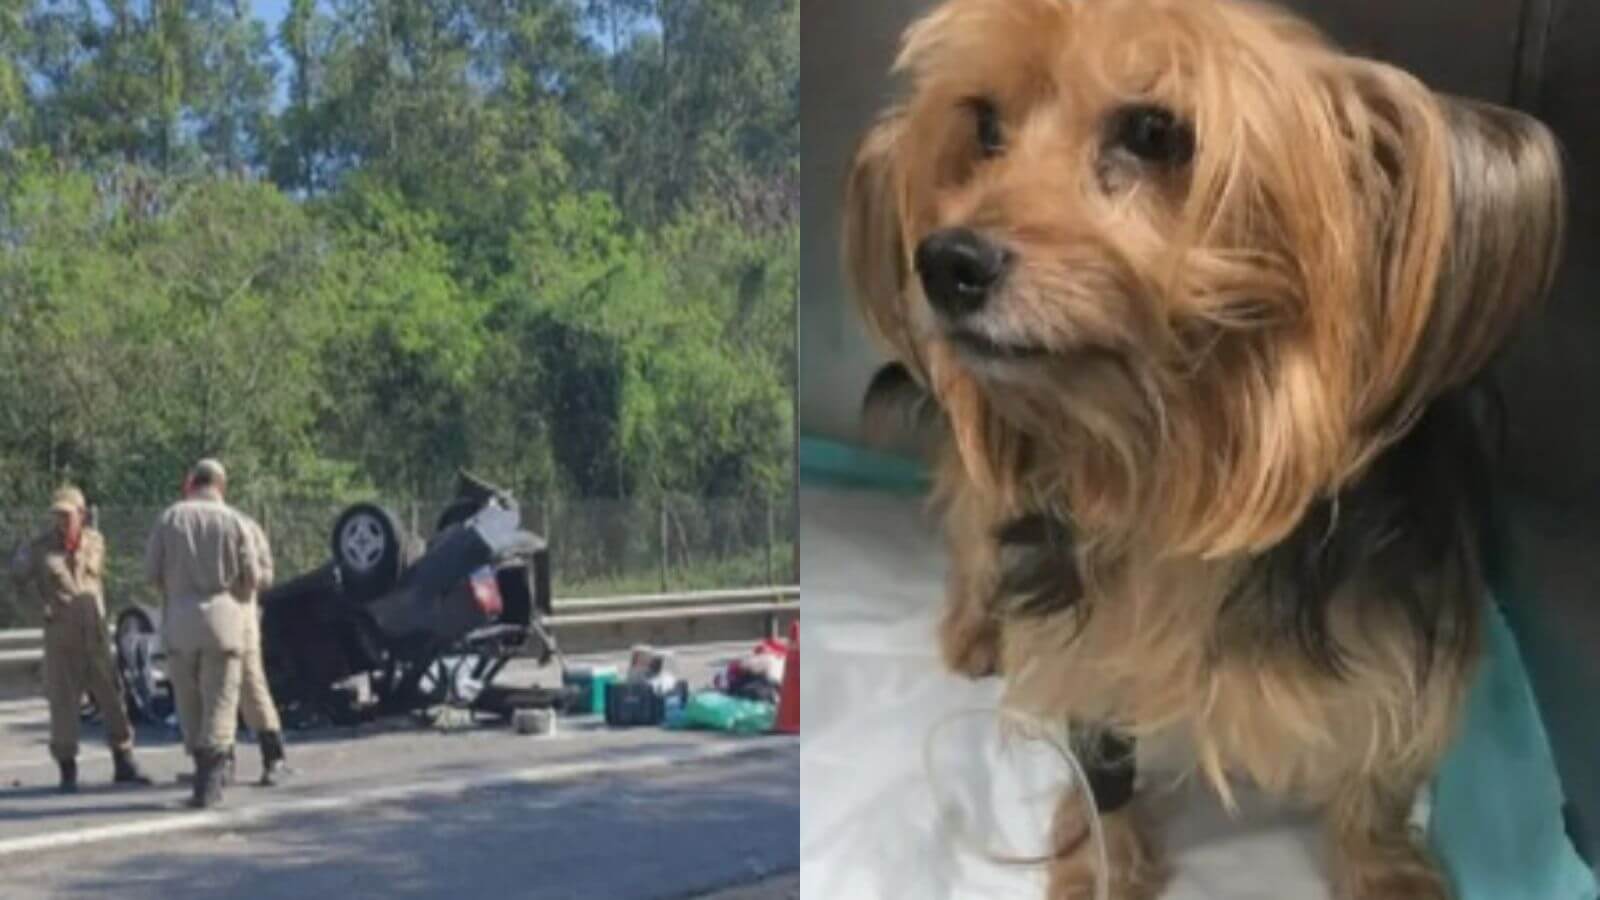 Cão é arremessado em acidente e corre 5 km até ser resgatado